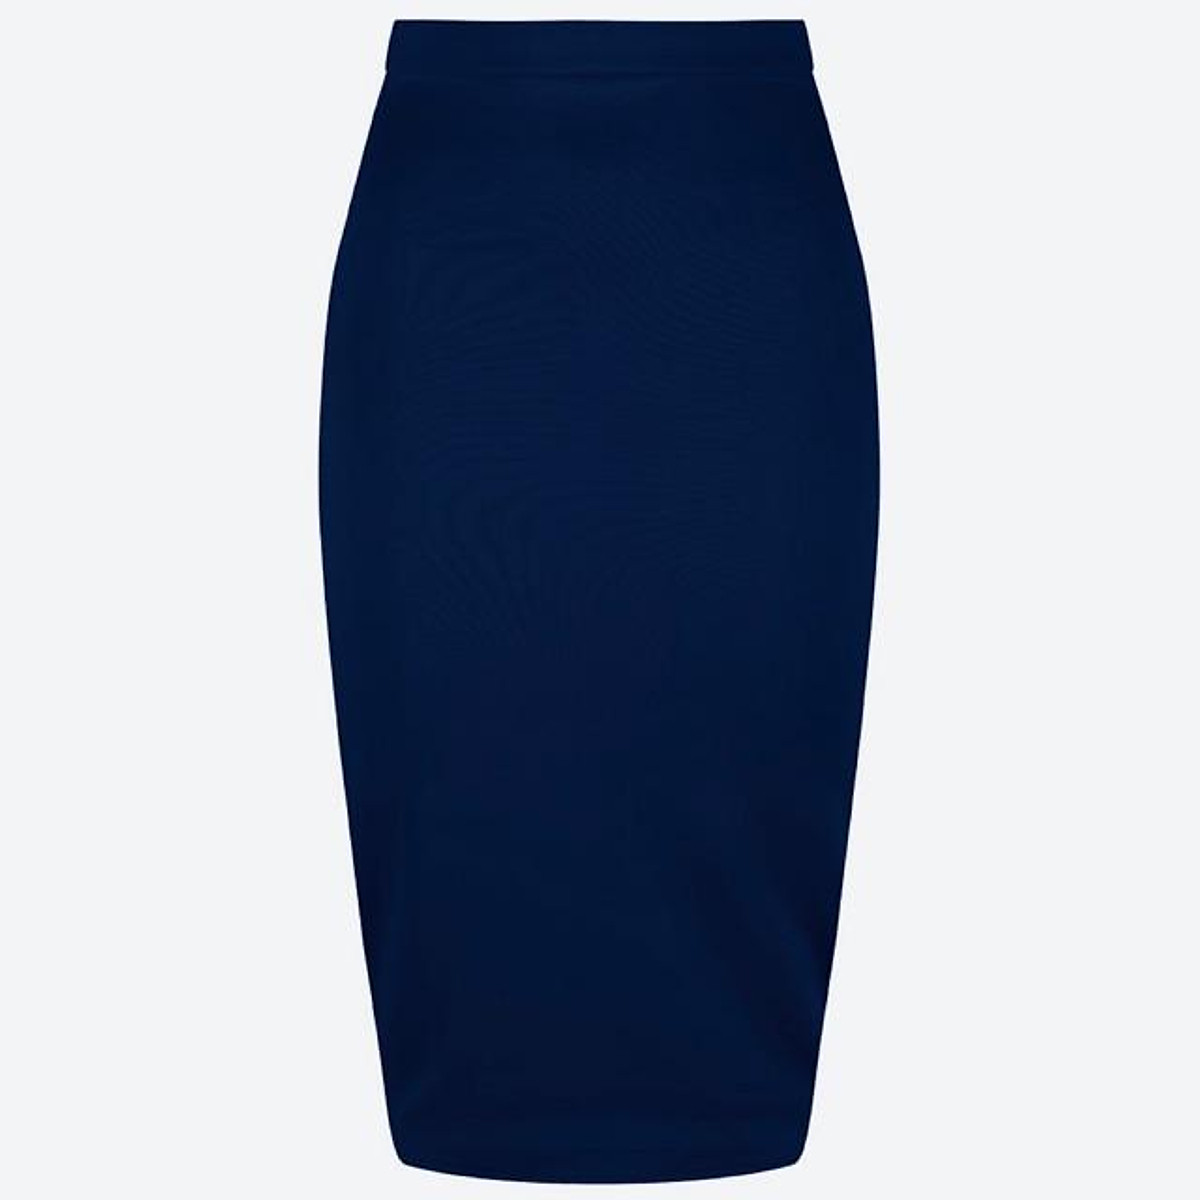 CV1954  Chân váy zuýp màu xanh than  Thời trang công sở nữ  Bazzivn